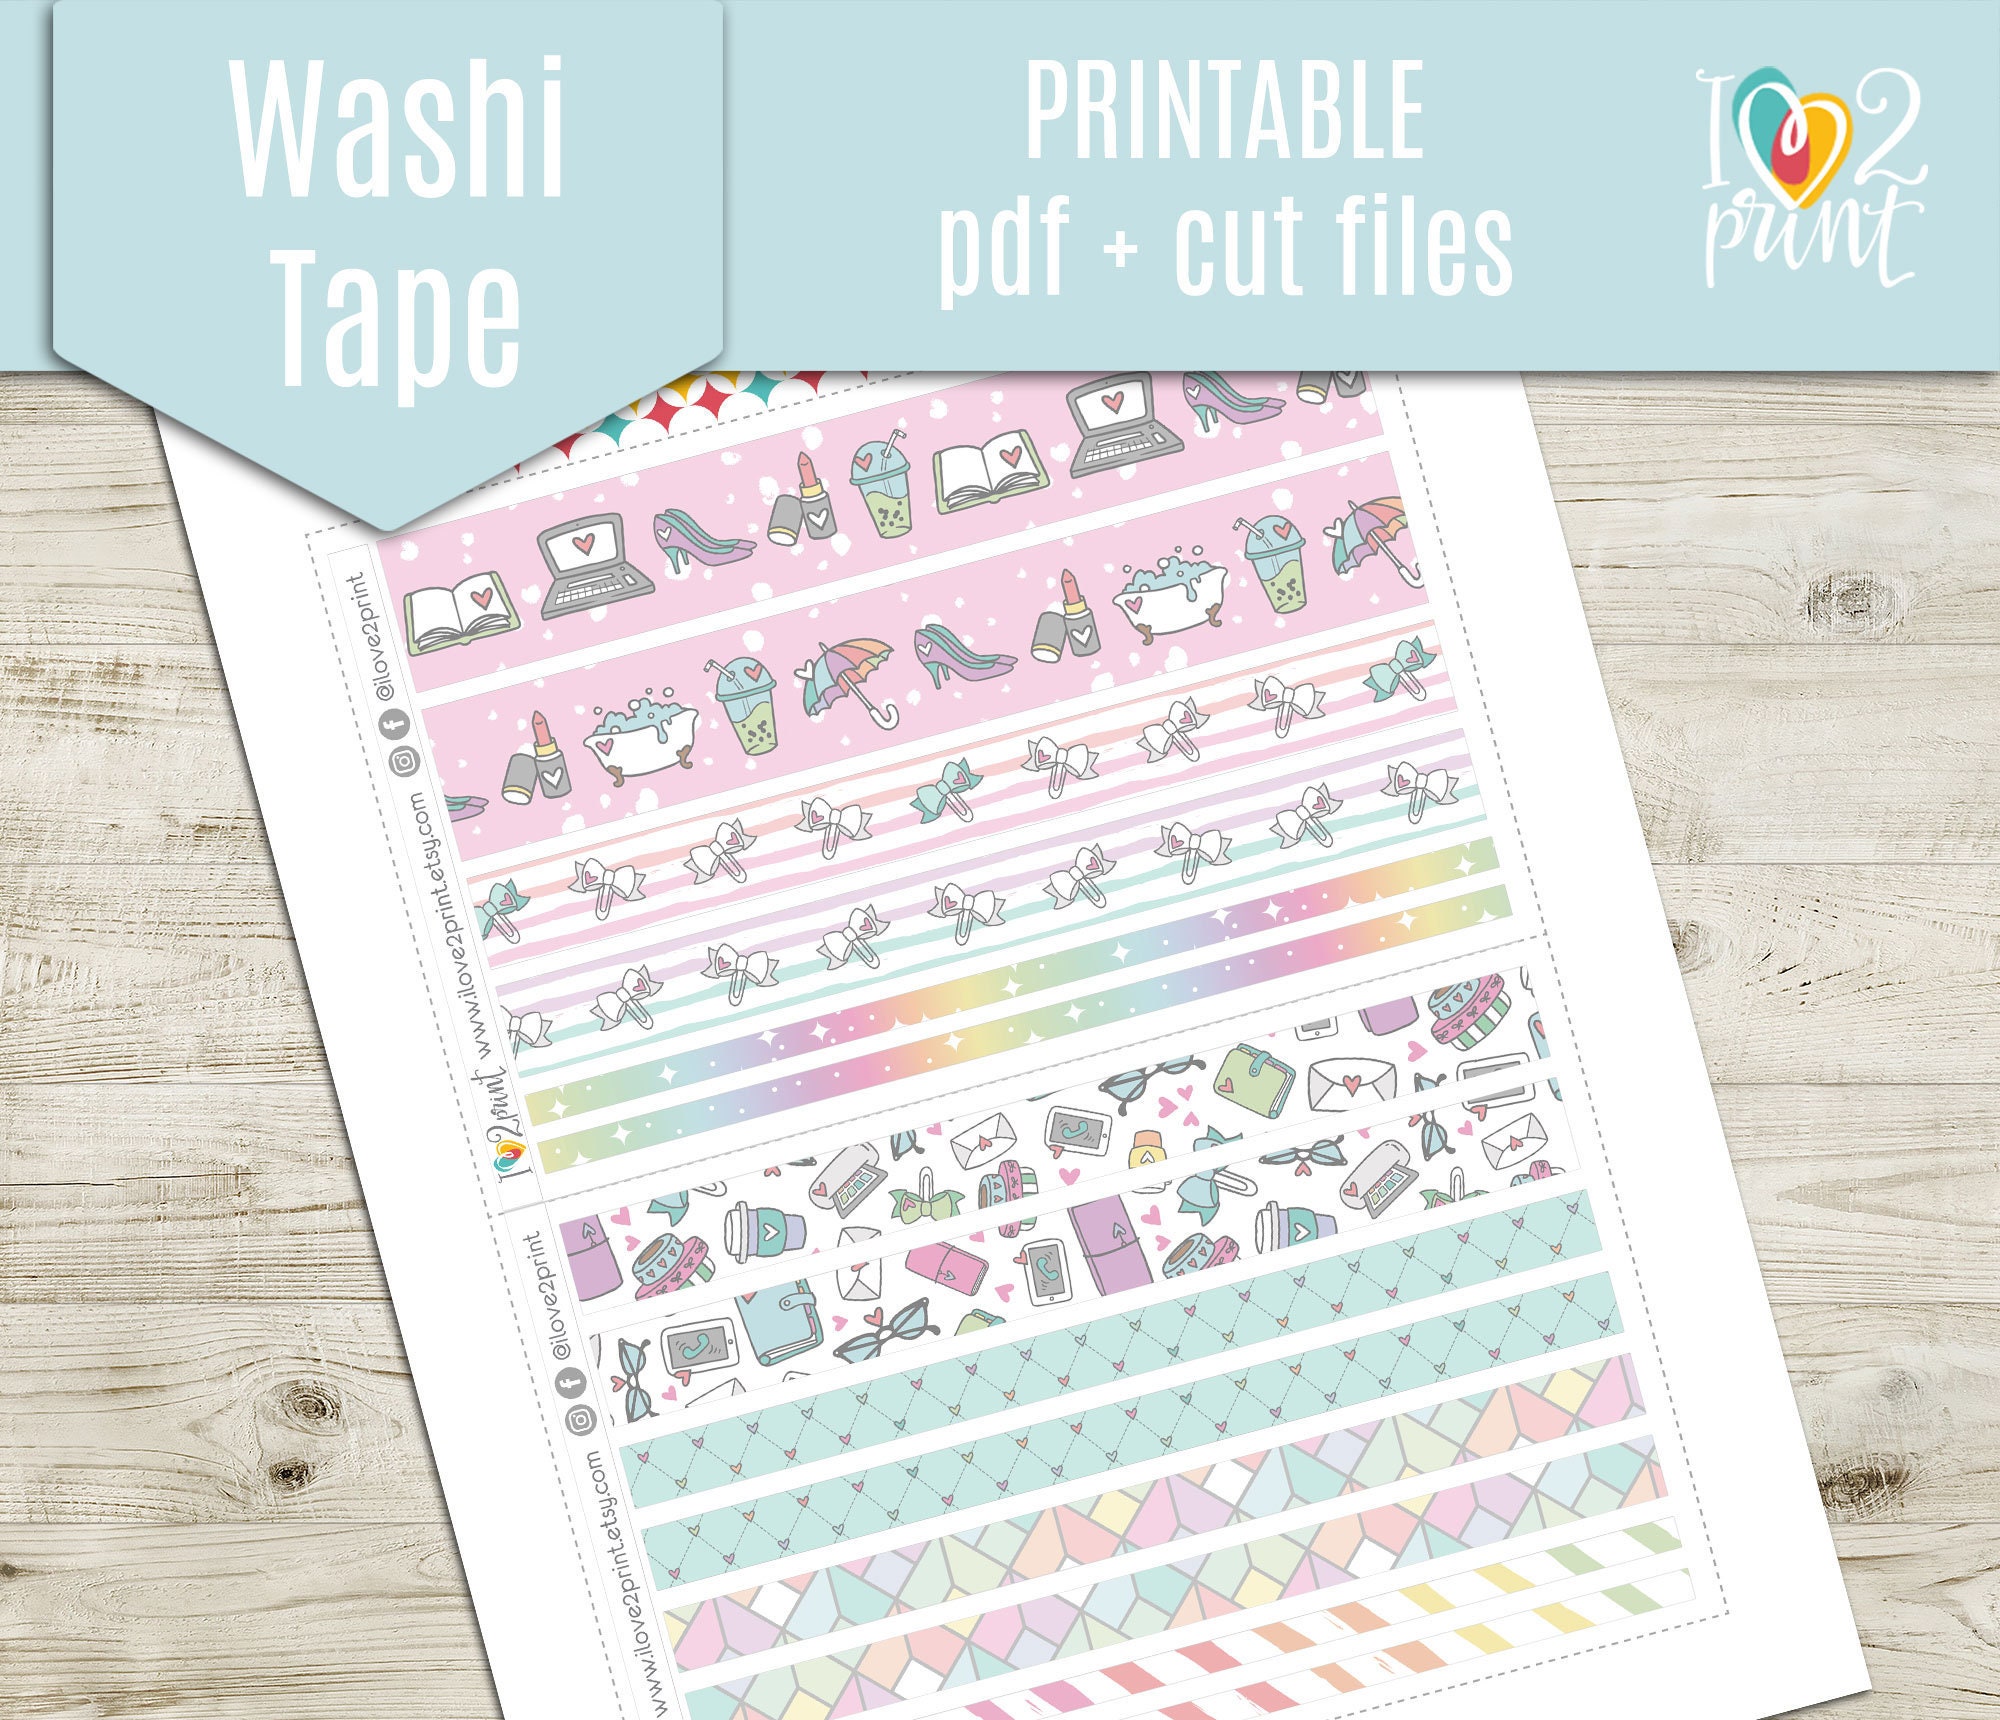 Washi Tape Printable, Junk Journal Printable, No. 92 